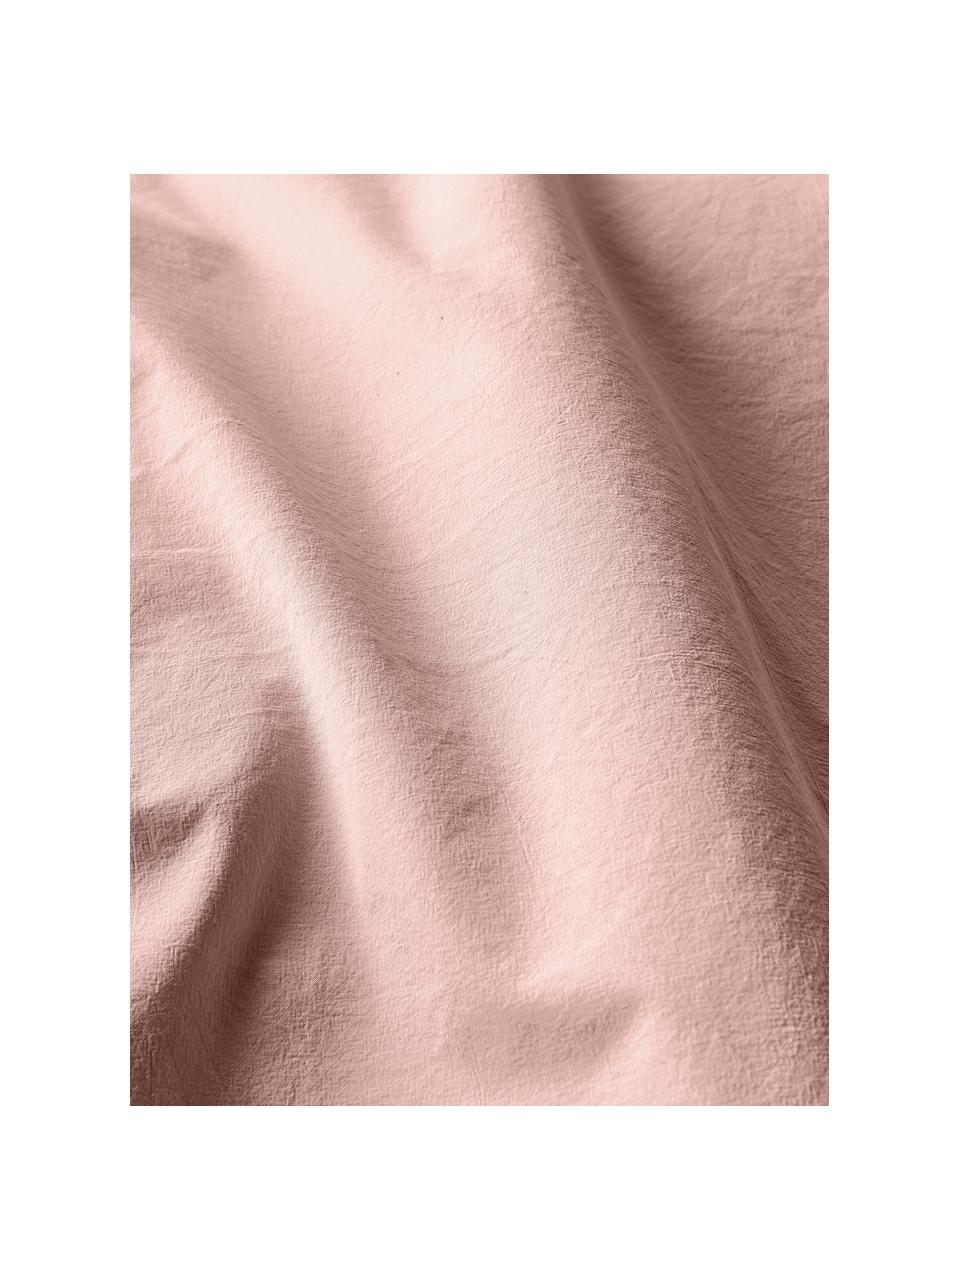 Copripiumino in cotone lavato Darlyn, 100% cotone
Densità dei fili 150, qualità standard

La biancheria da letto in cotone è piacevolmente morbida sulla pelle, assorbe bene l'umidità ed è adatta per chi soffre di allergie

Uno speciale processo di lavaggio conferisce al tessuto un aspetto stonewash robusto e irregolare. Questo rende anche il tessuto morbido ed elastico al tatto e gli conferisce un aspetto stropicciato naturale che non richiede stiratura e trasuda intimità.

Il materiale utilizzato in questo prodotto è testato per le sostanze nocive e certificato secondo lo STANDARD 100 by OEKO-TEX®, 4265CIT, CITEVE., Pesca, Larg. 200 x Lung. 200 cm